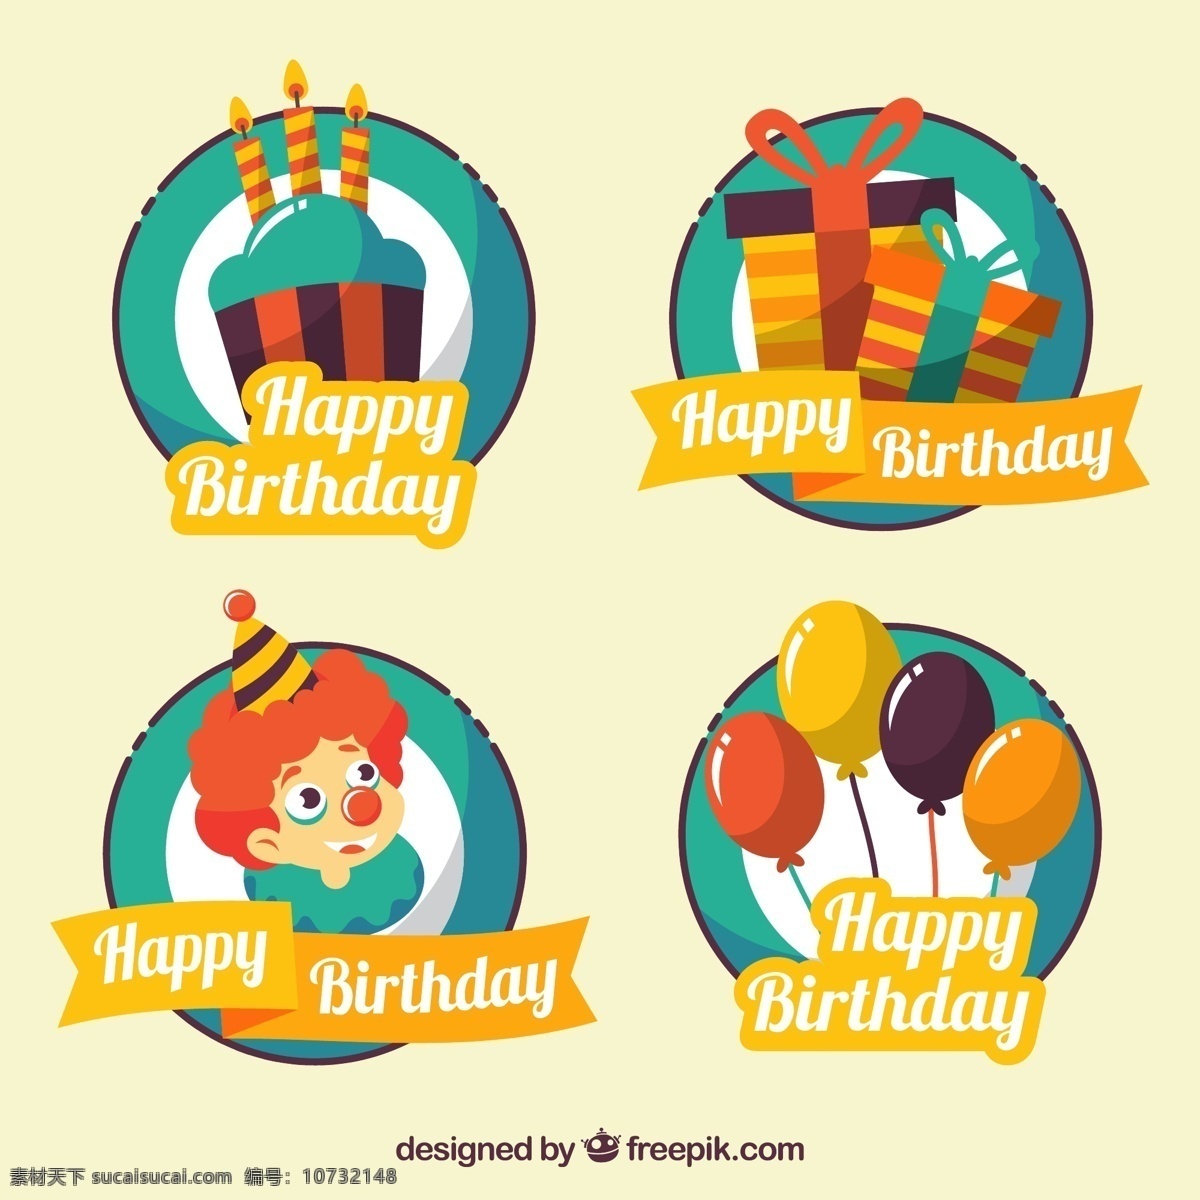 款 创意 生日 快乐 标签 矢量图 礼物 礼盒 小丑 气球 蛋糕 happy birthday 生日快乐 ai格式 矢量素材 最新矢量图 招贴设计